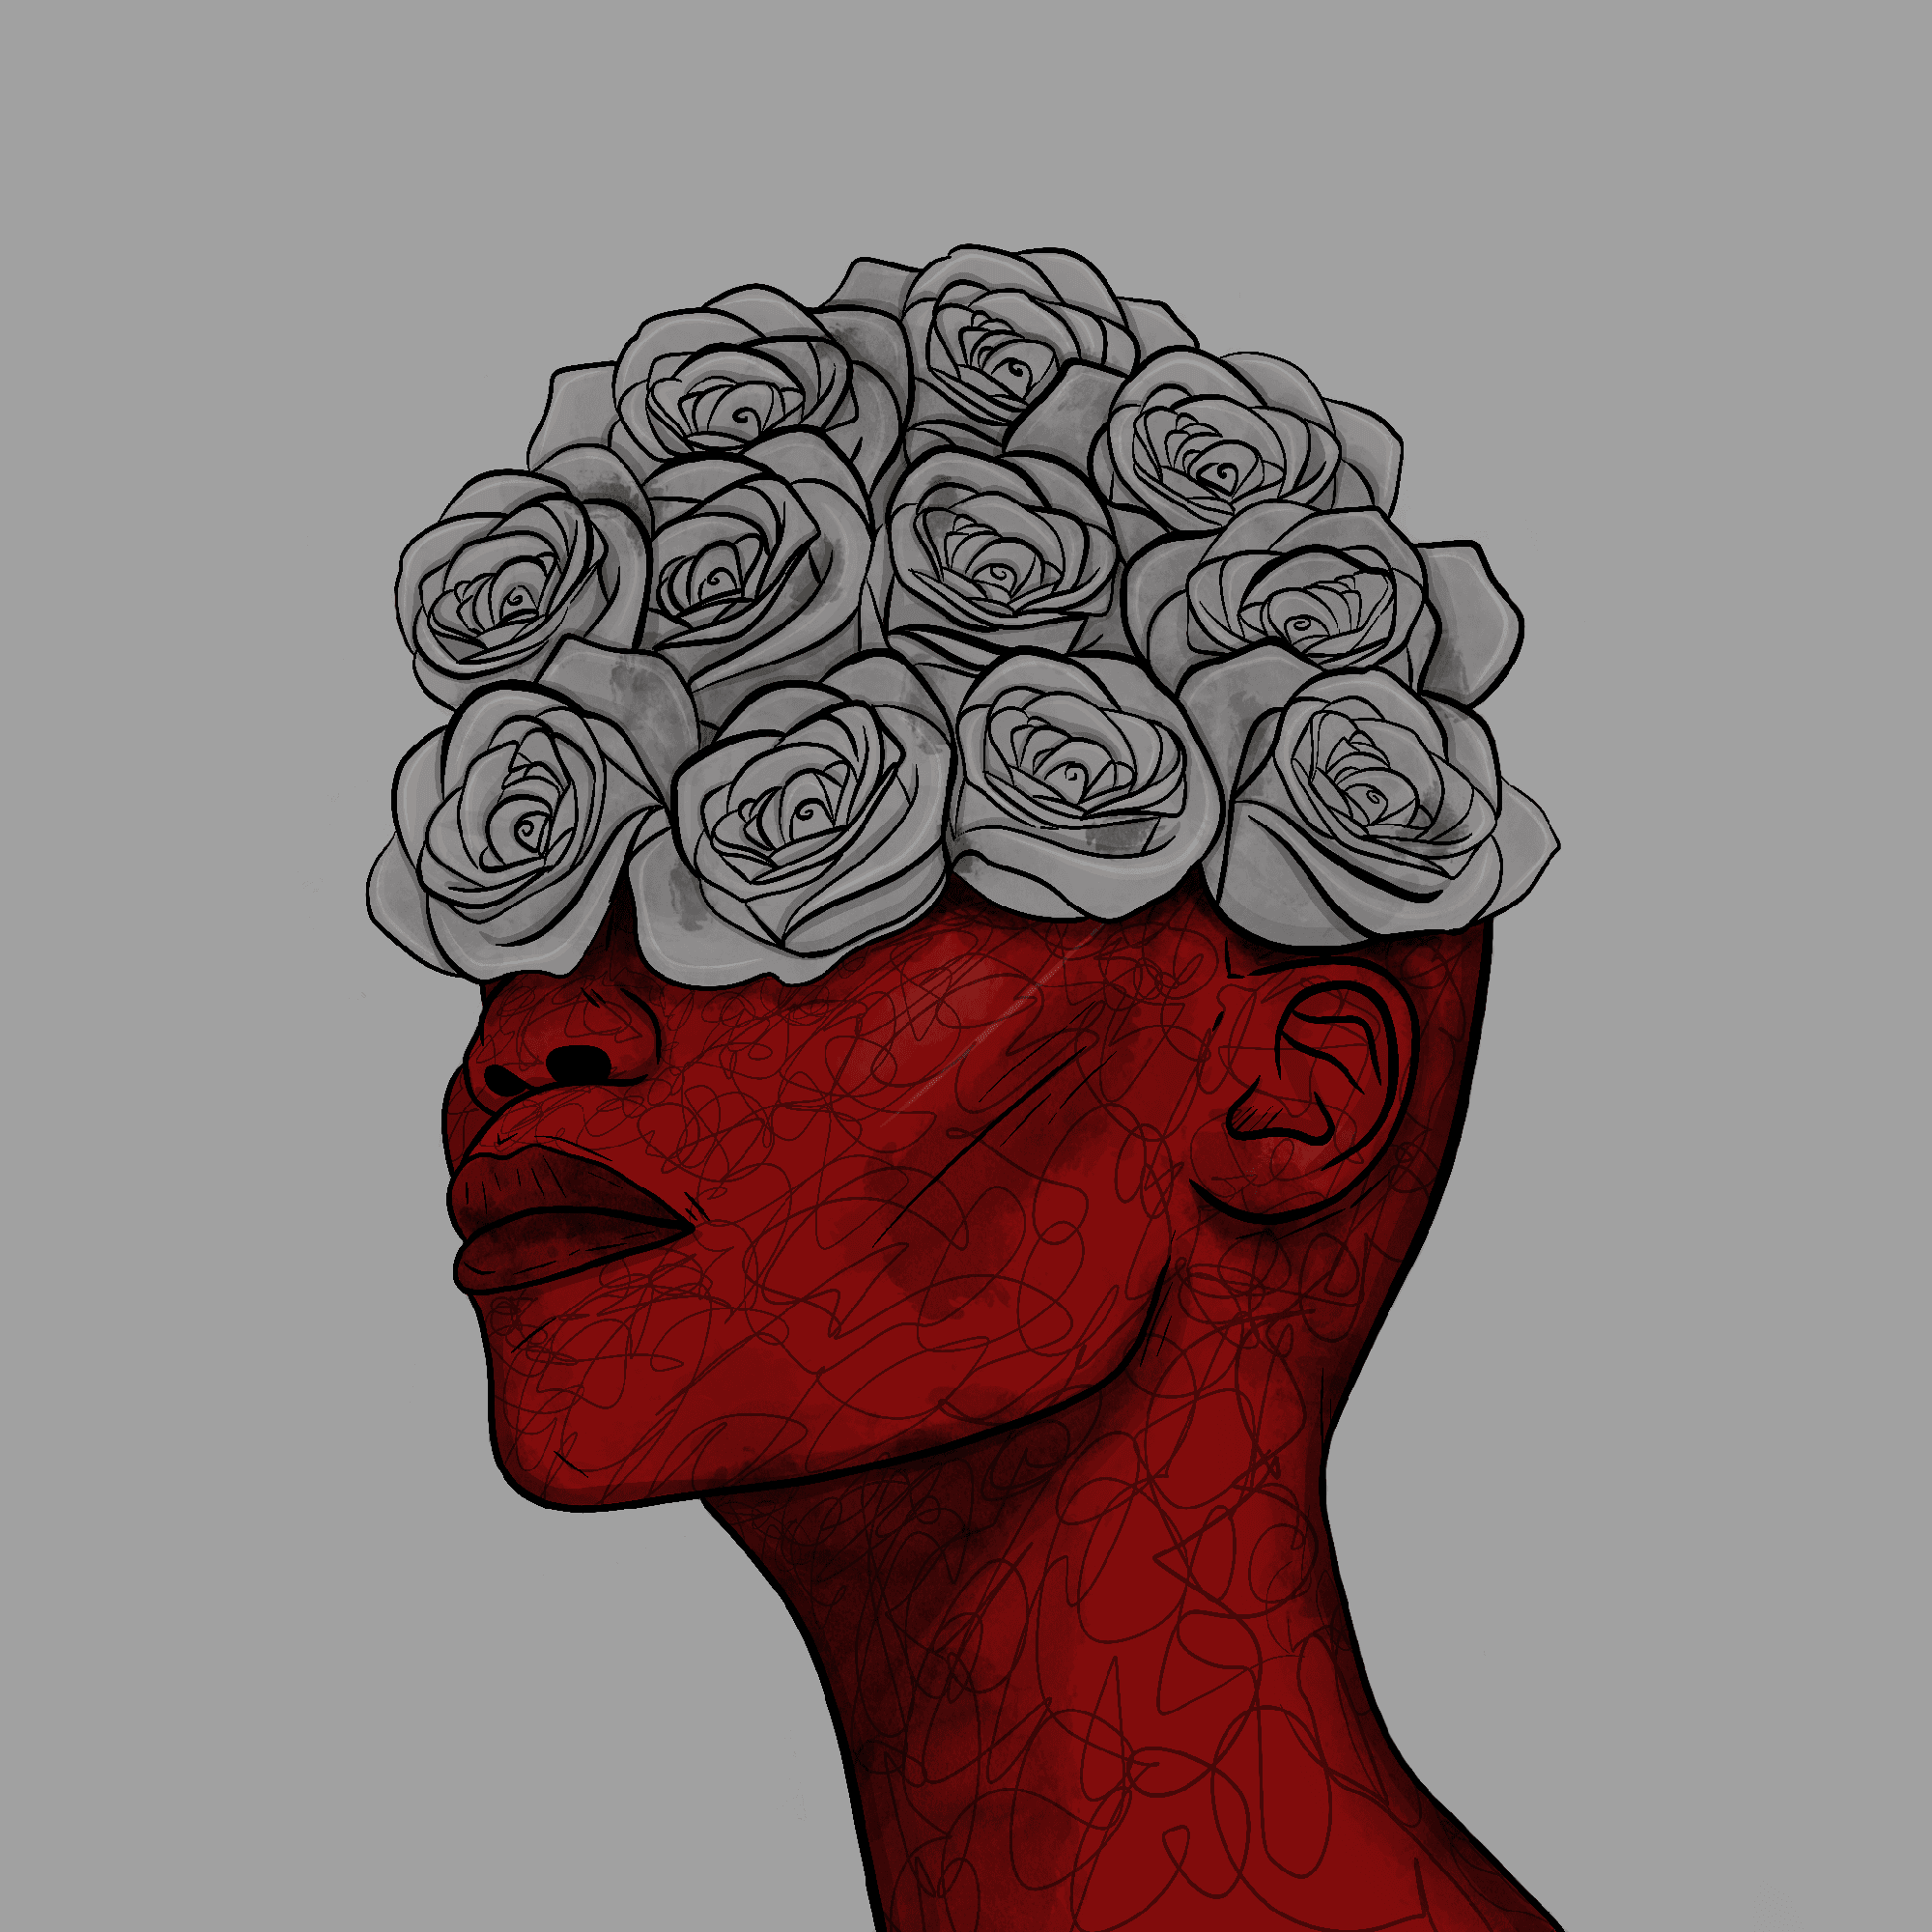 Queen of Roses #69